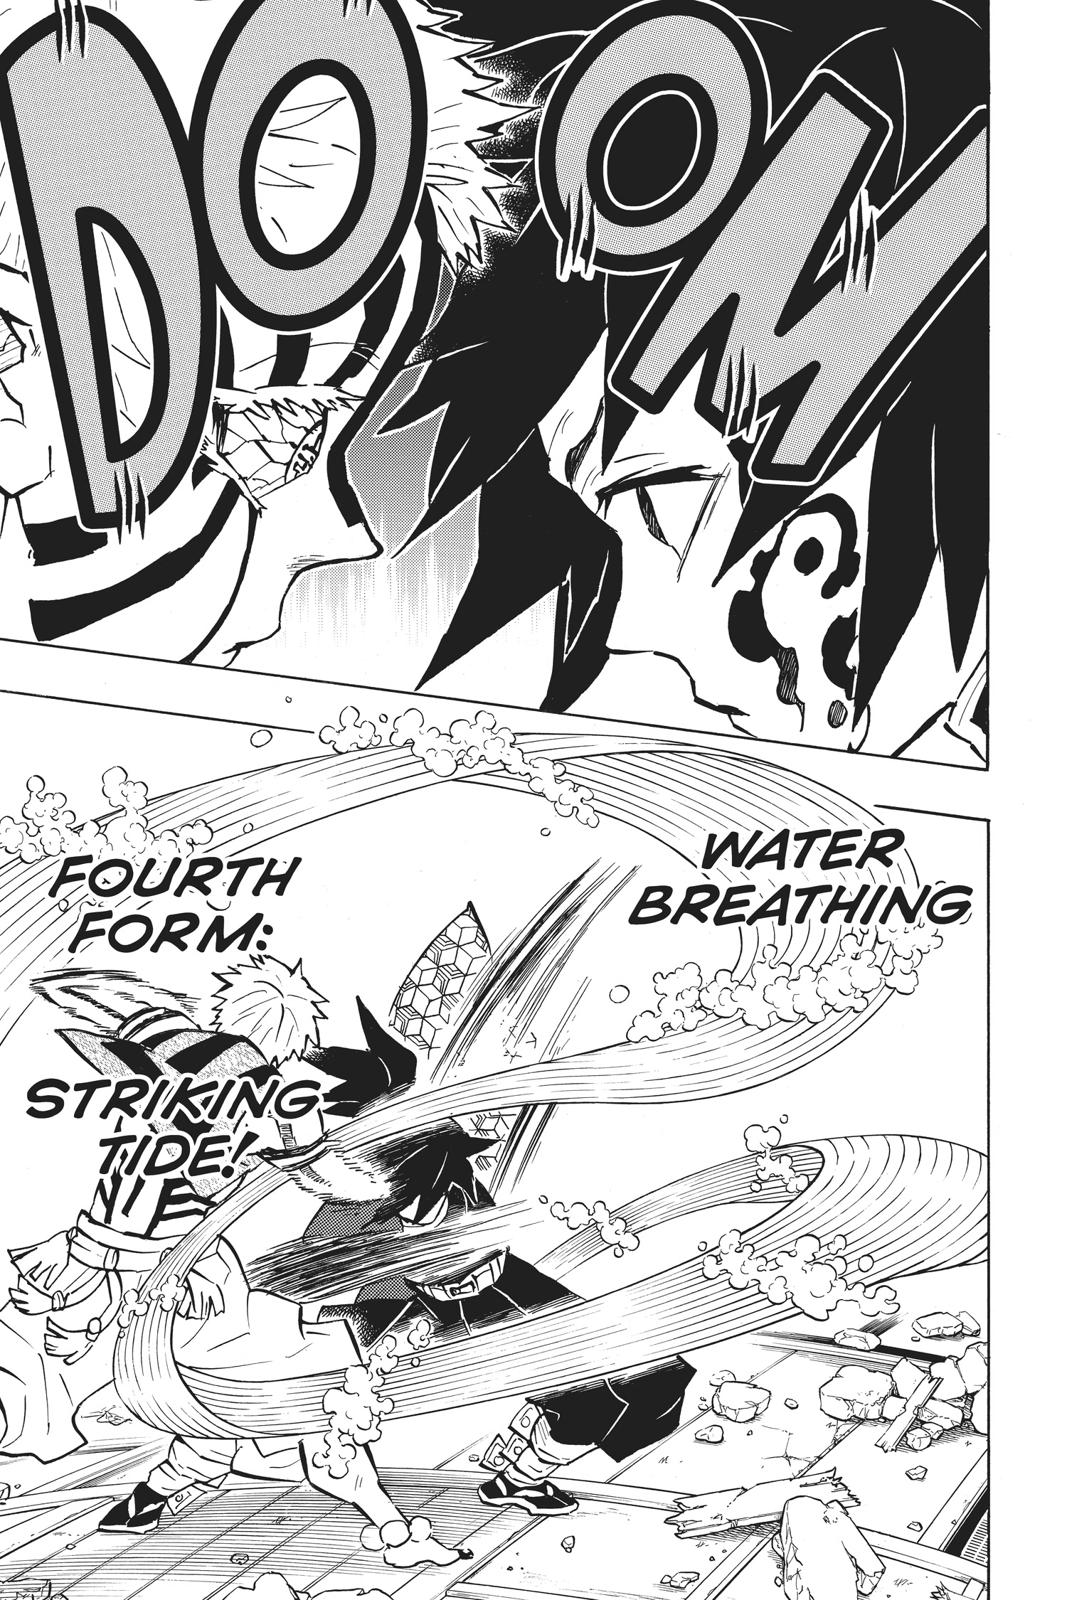 Demon Slayer Manga Manga Chapter - 150 - image 4